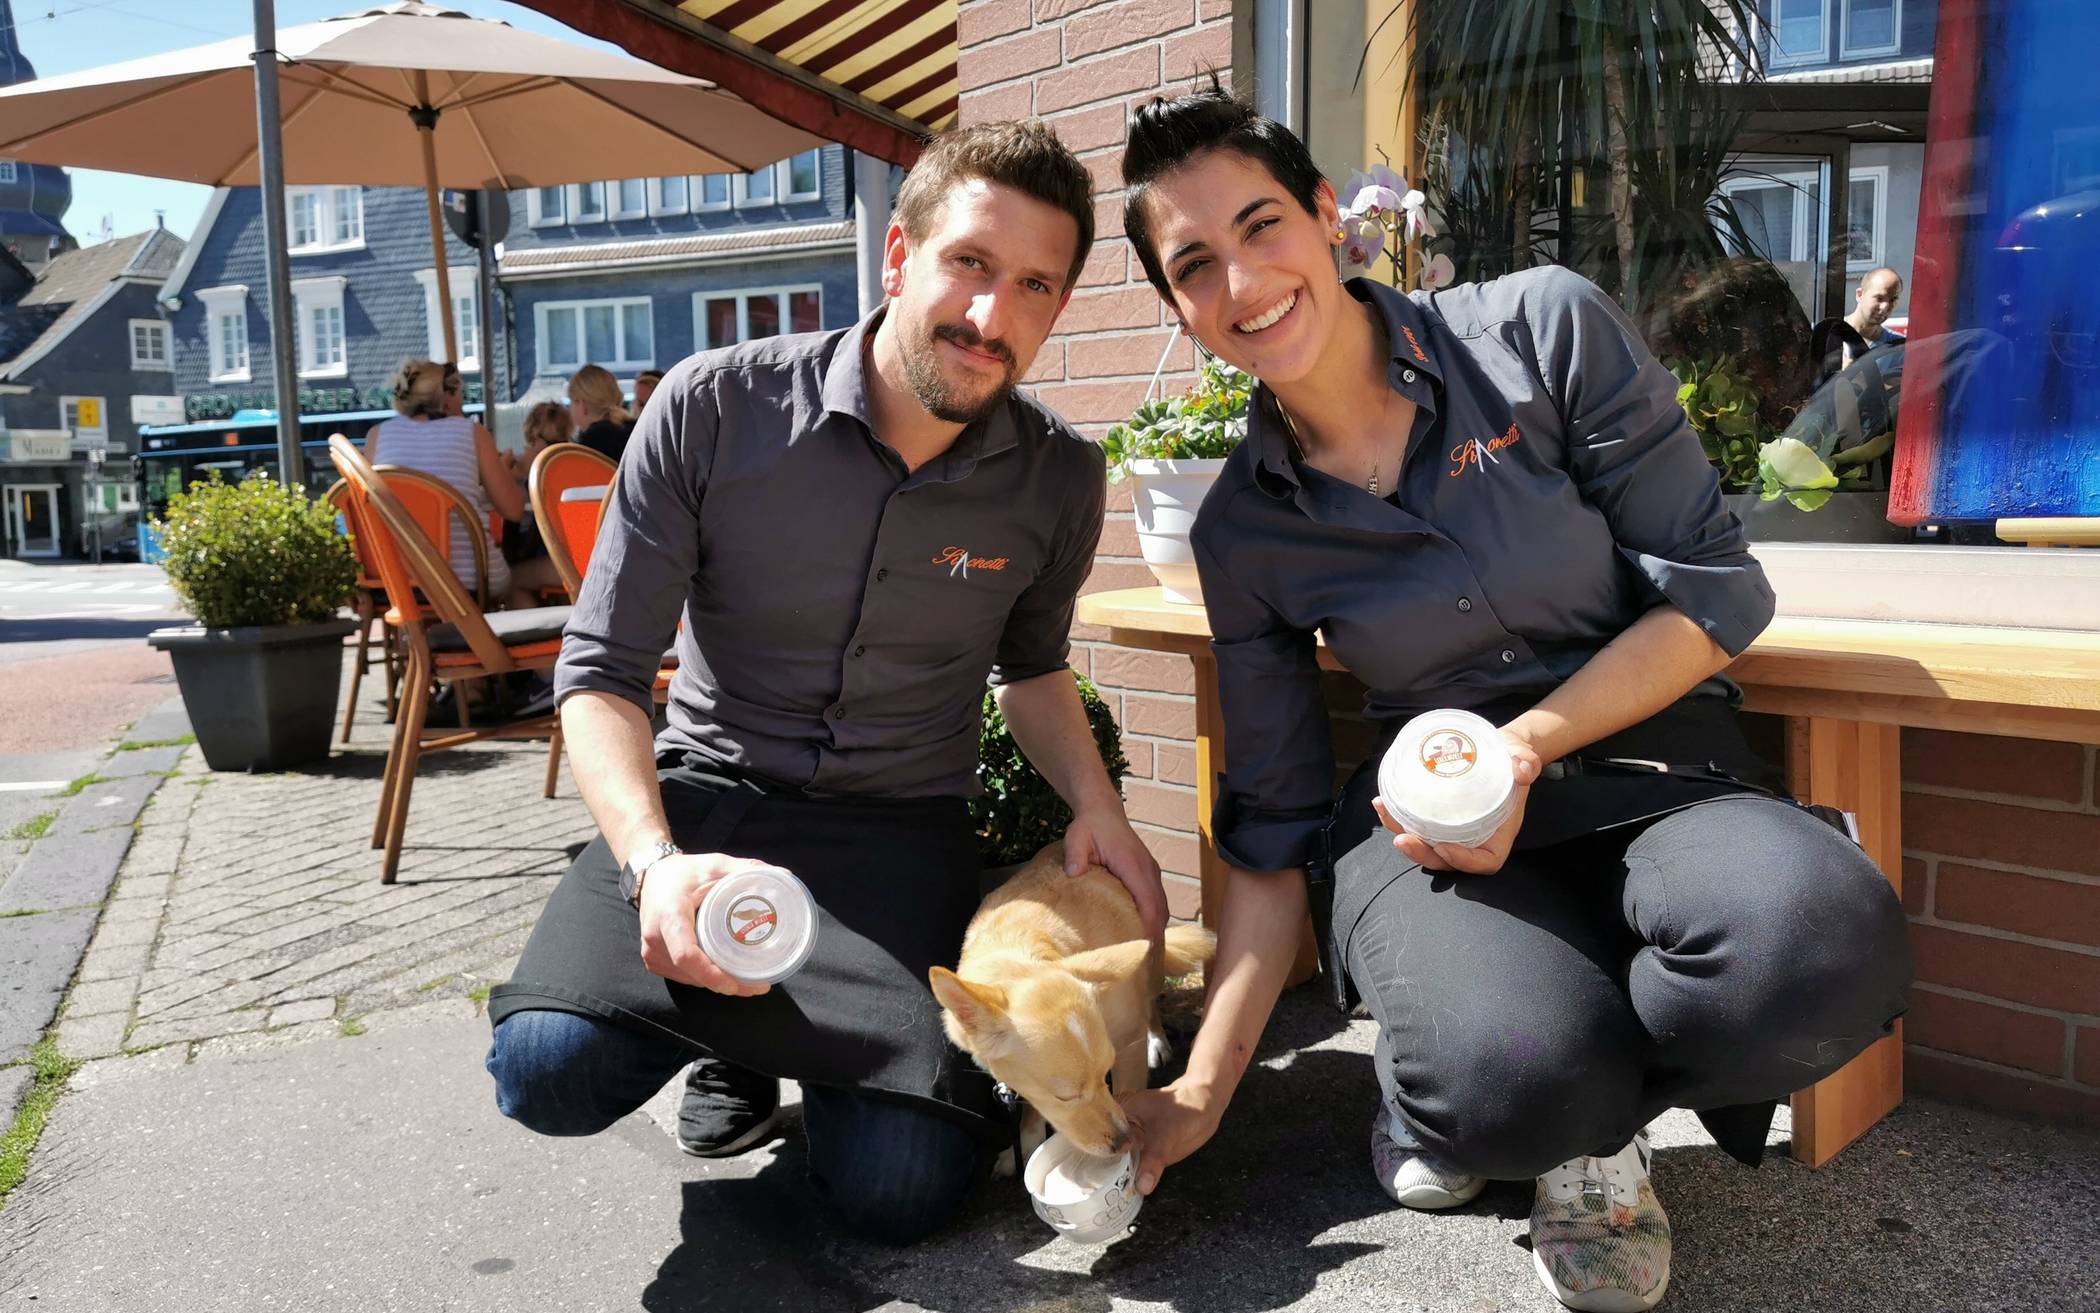 Dog Gelato - das Schild ist kein Scherz. Seit diesem Sommer verkaufen Daniela Sergi und Massimiliano Pol in ihrem Eiscafé in Cronenberg Eis speziell für Hunde.